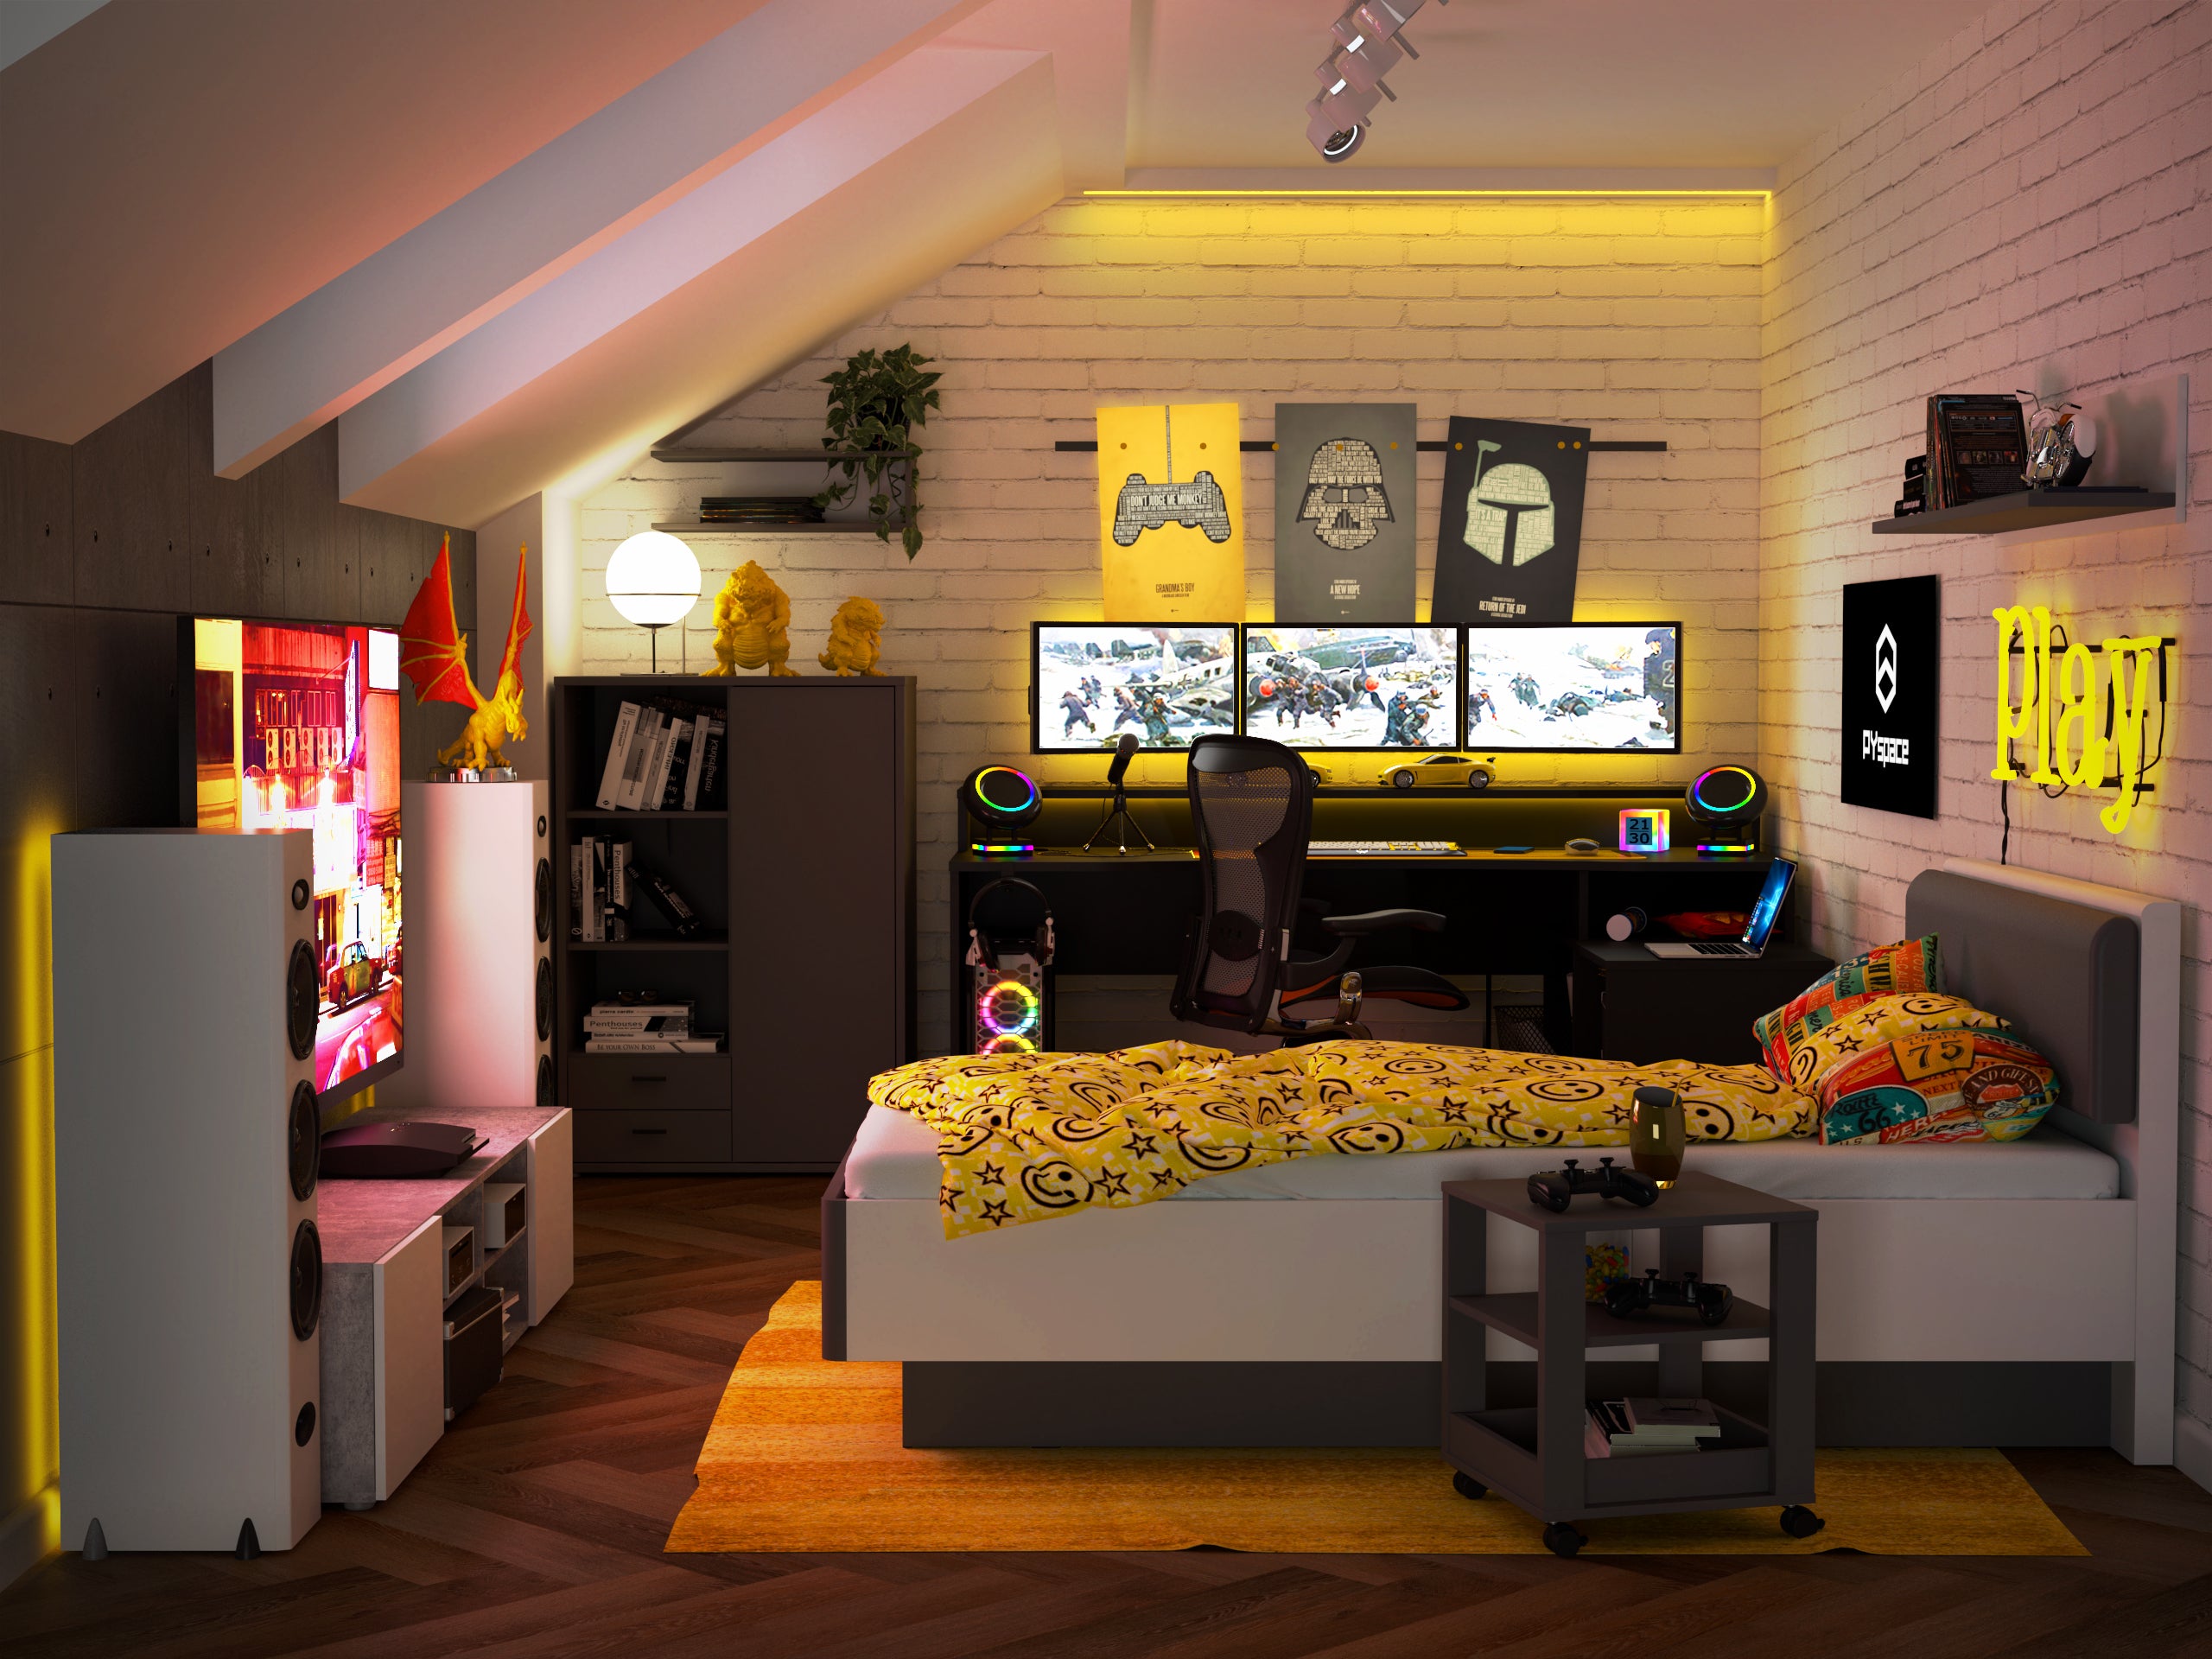 Żółty pokój gamingowy - jak urządzić?